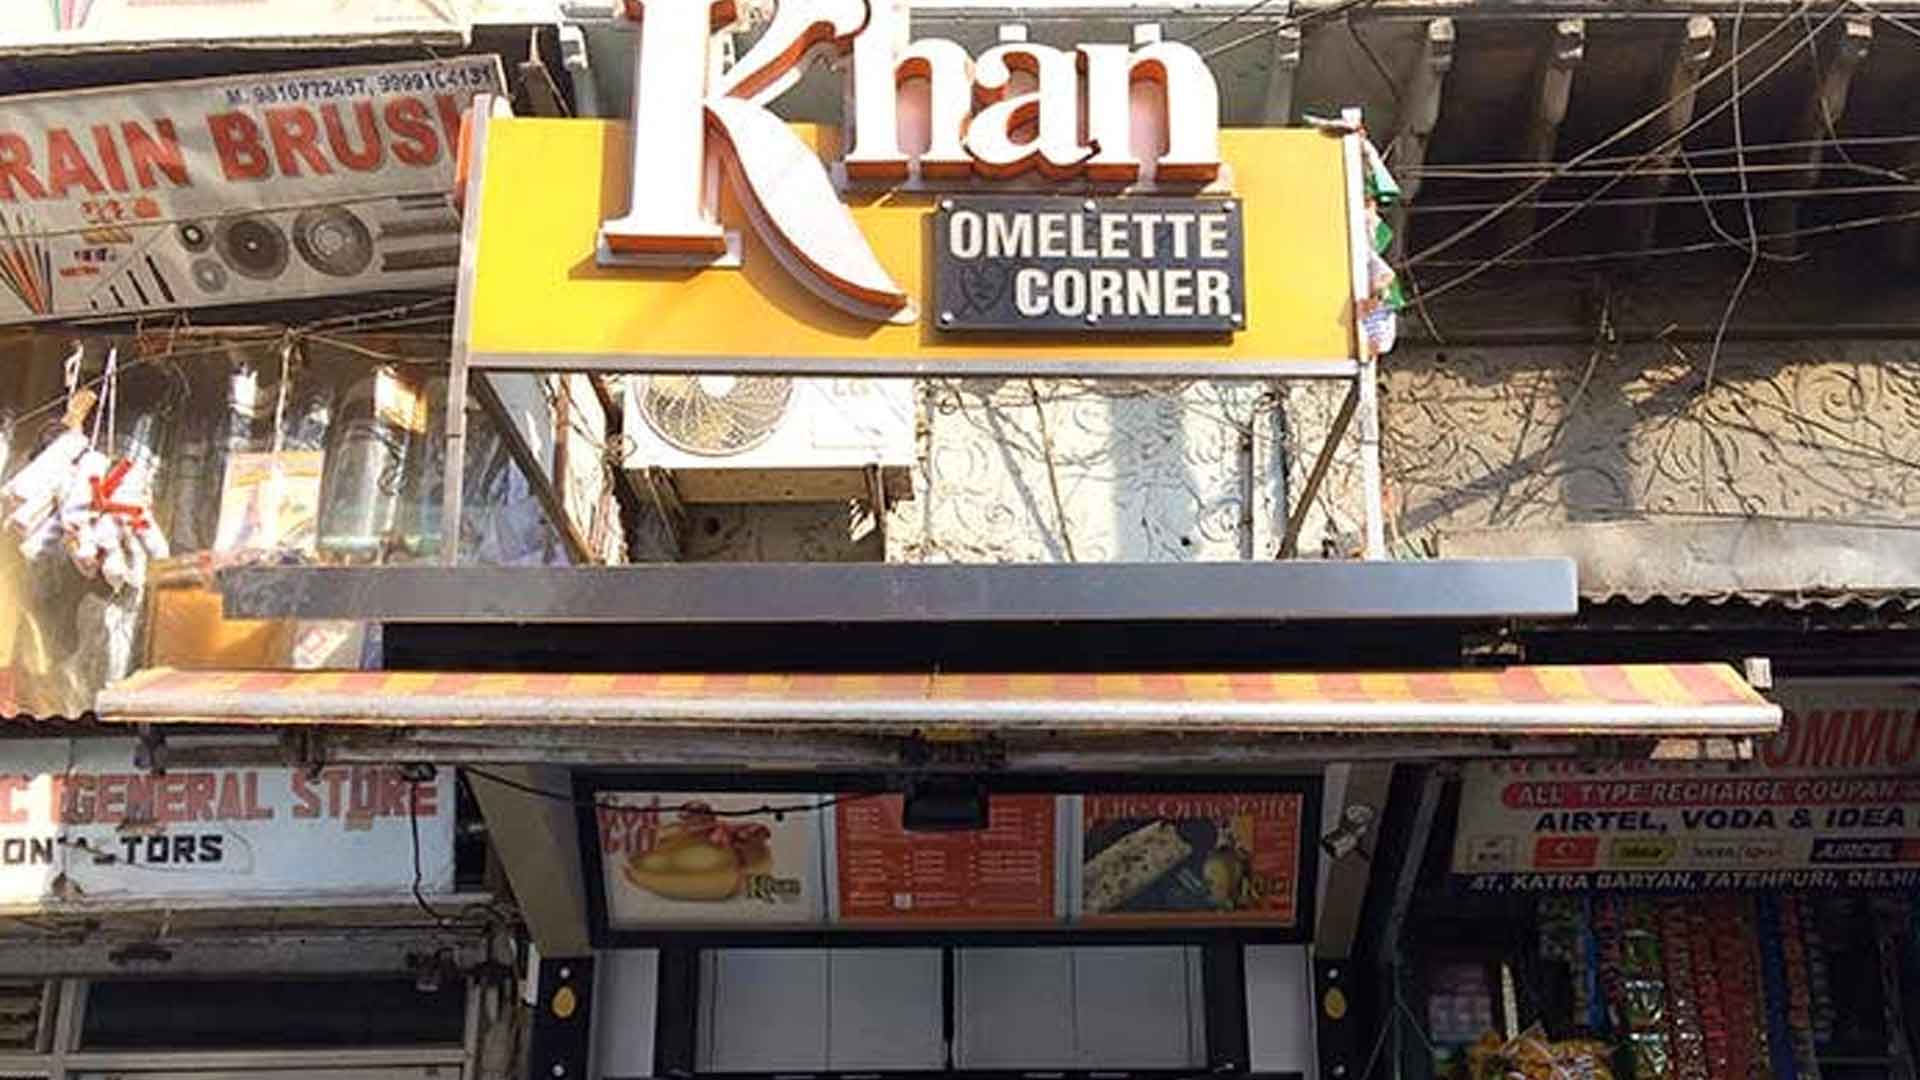 Satisfy your egg appetite, Visit Khan Omelette corner in Chandni Chowk